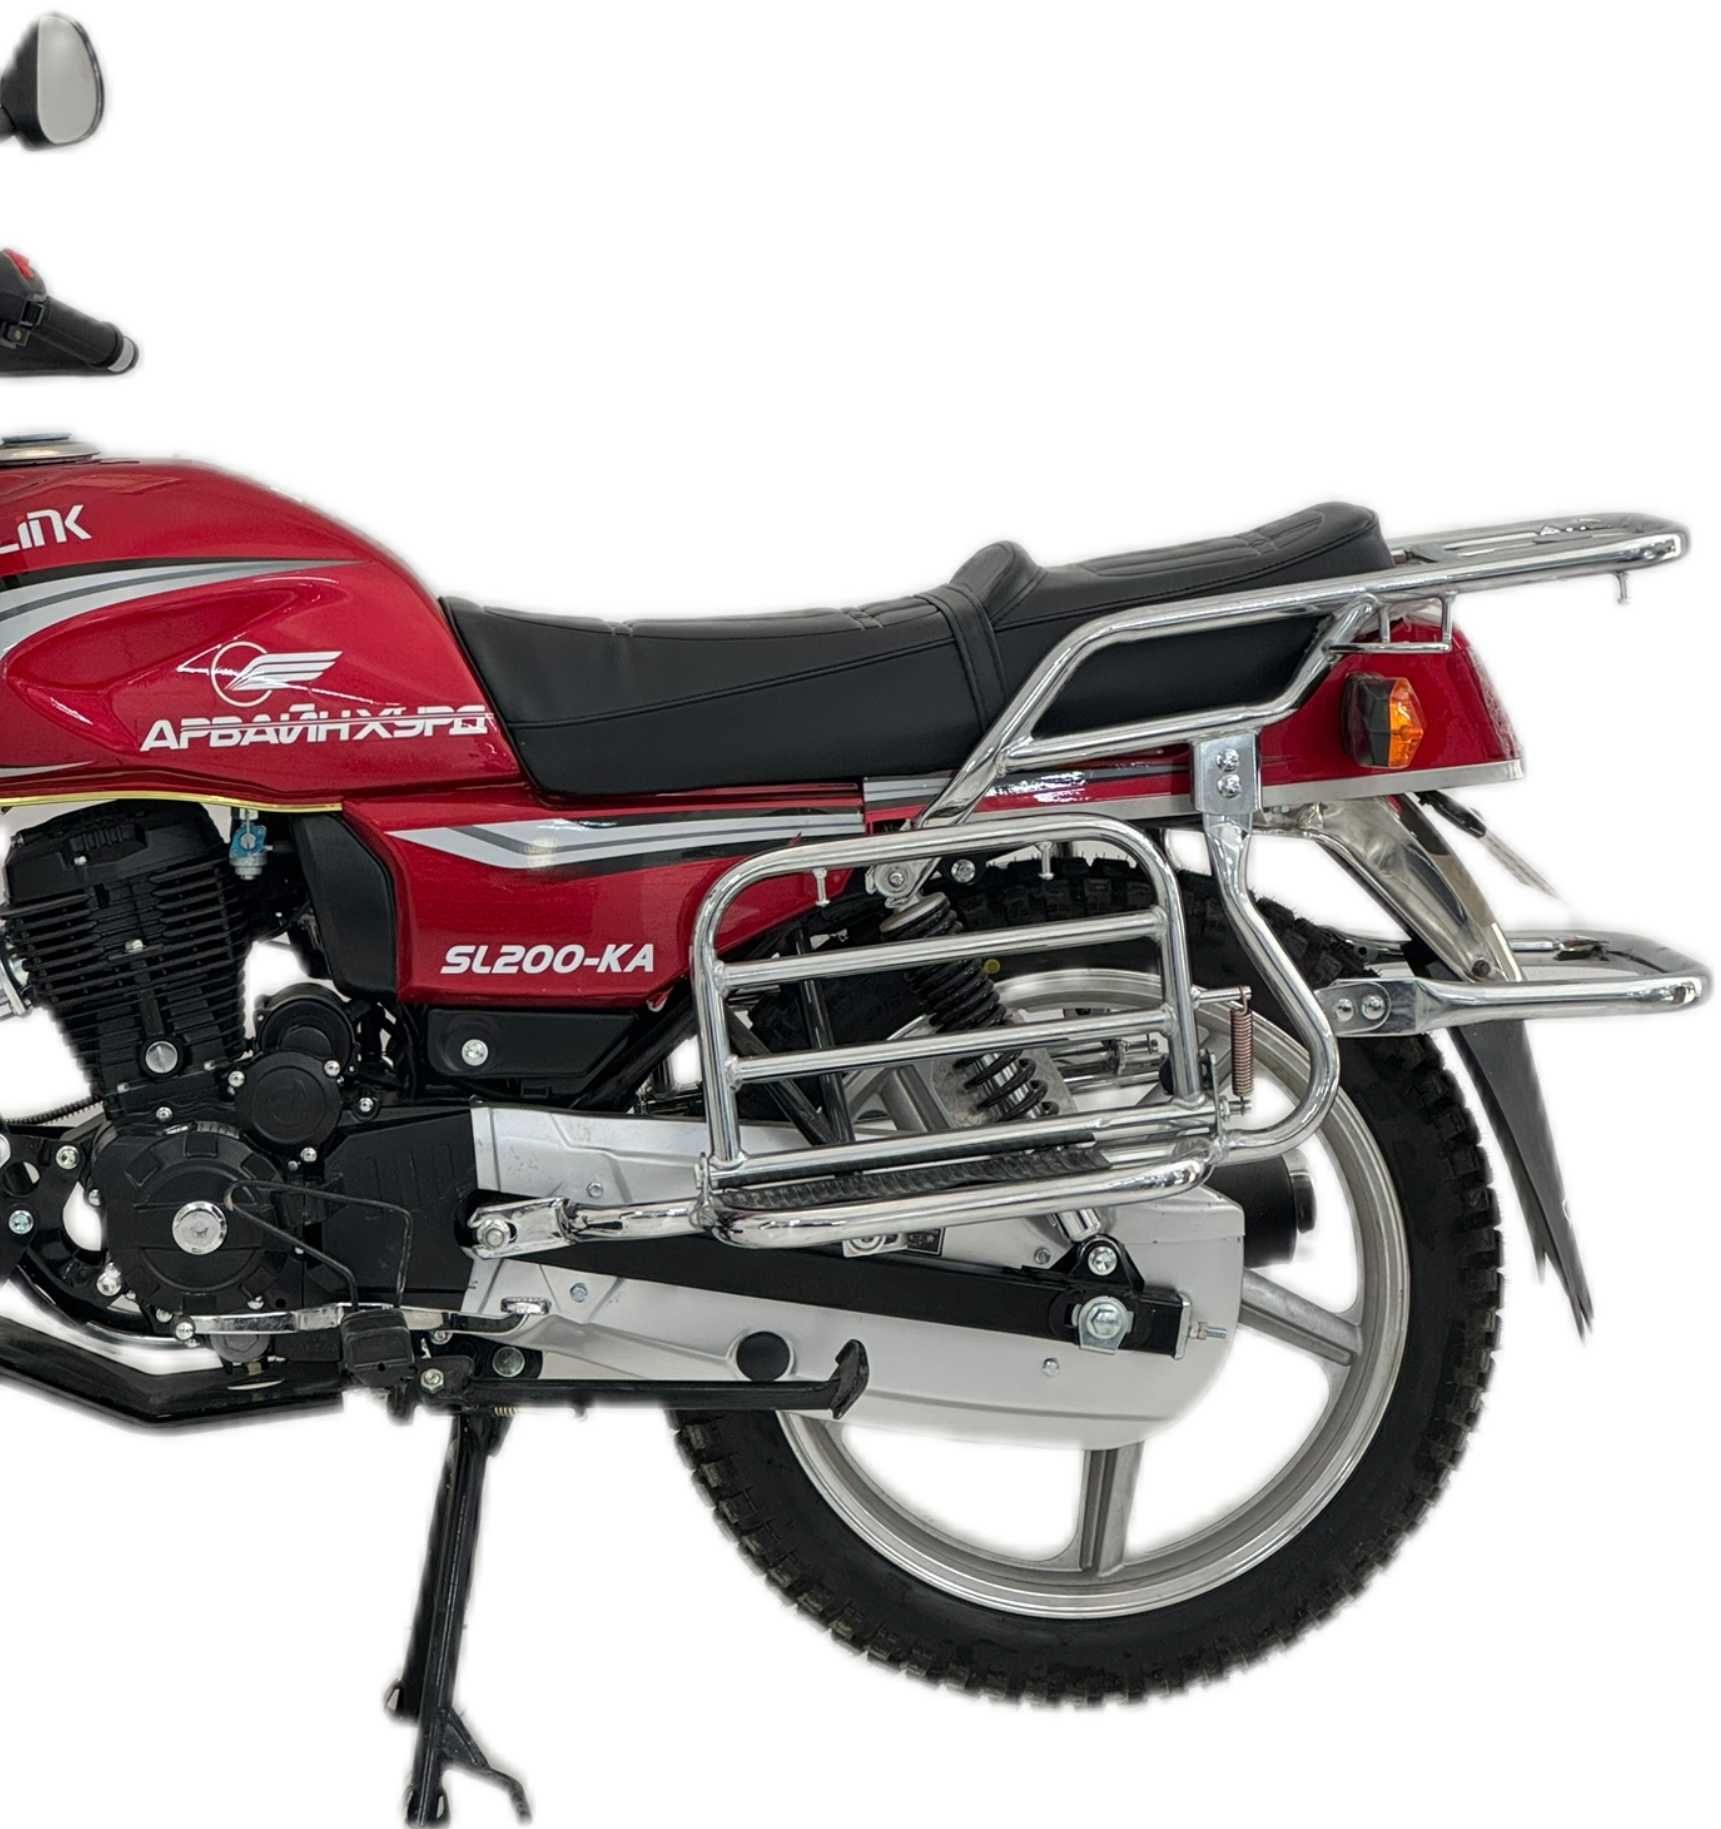 Сонлинк мотокцикл 200 кубовый; Sonlink мотоцикл оригинал